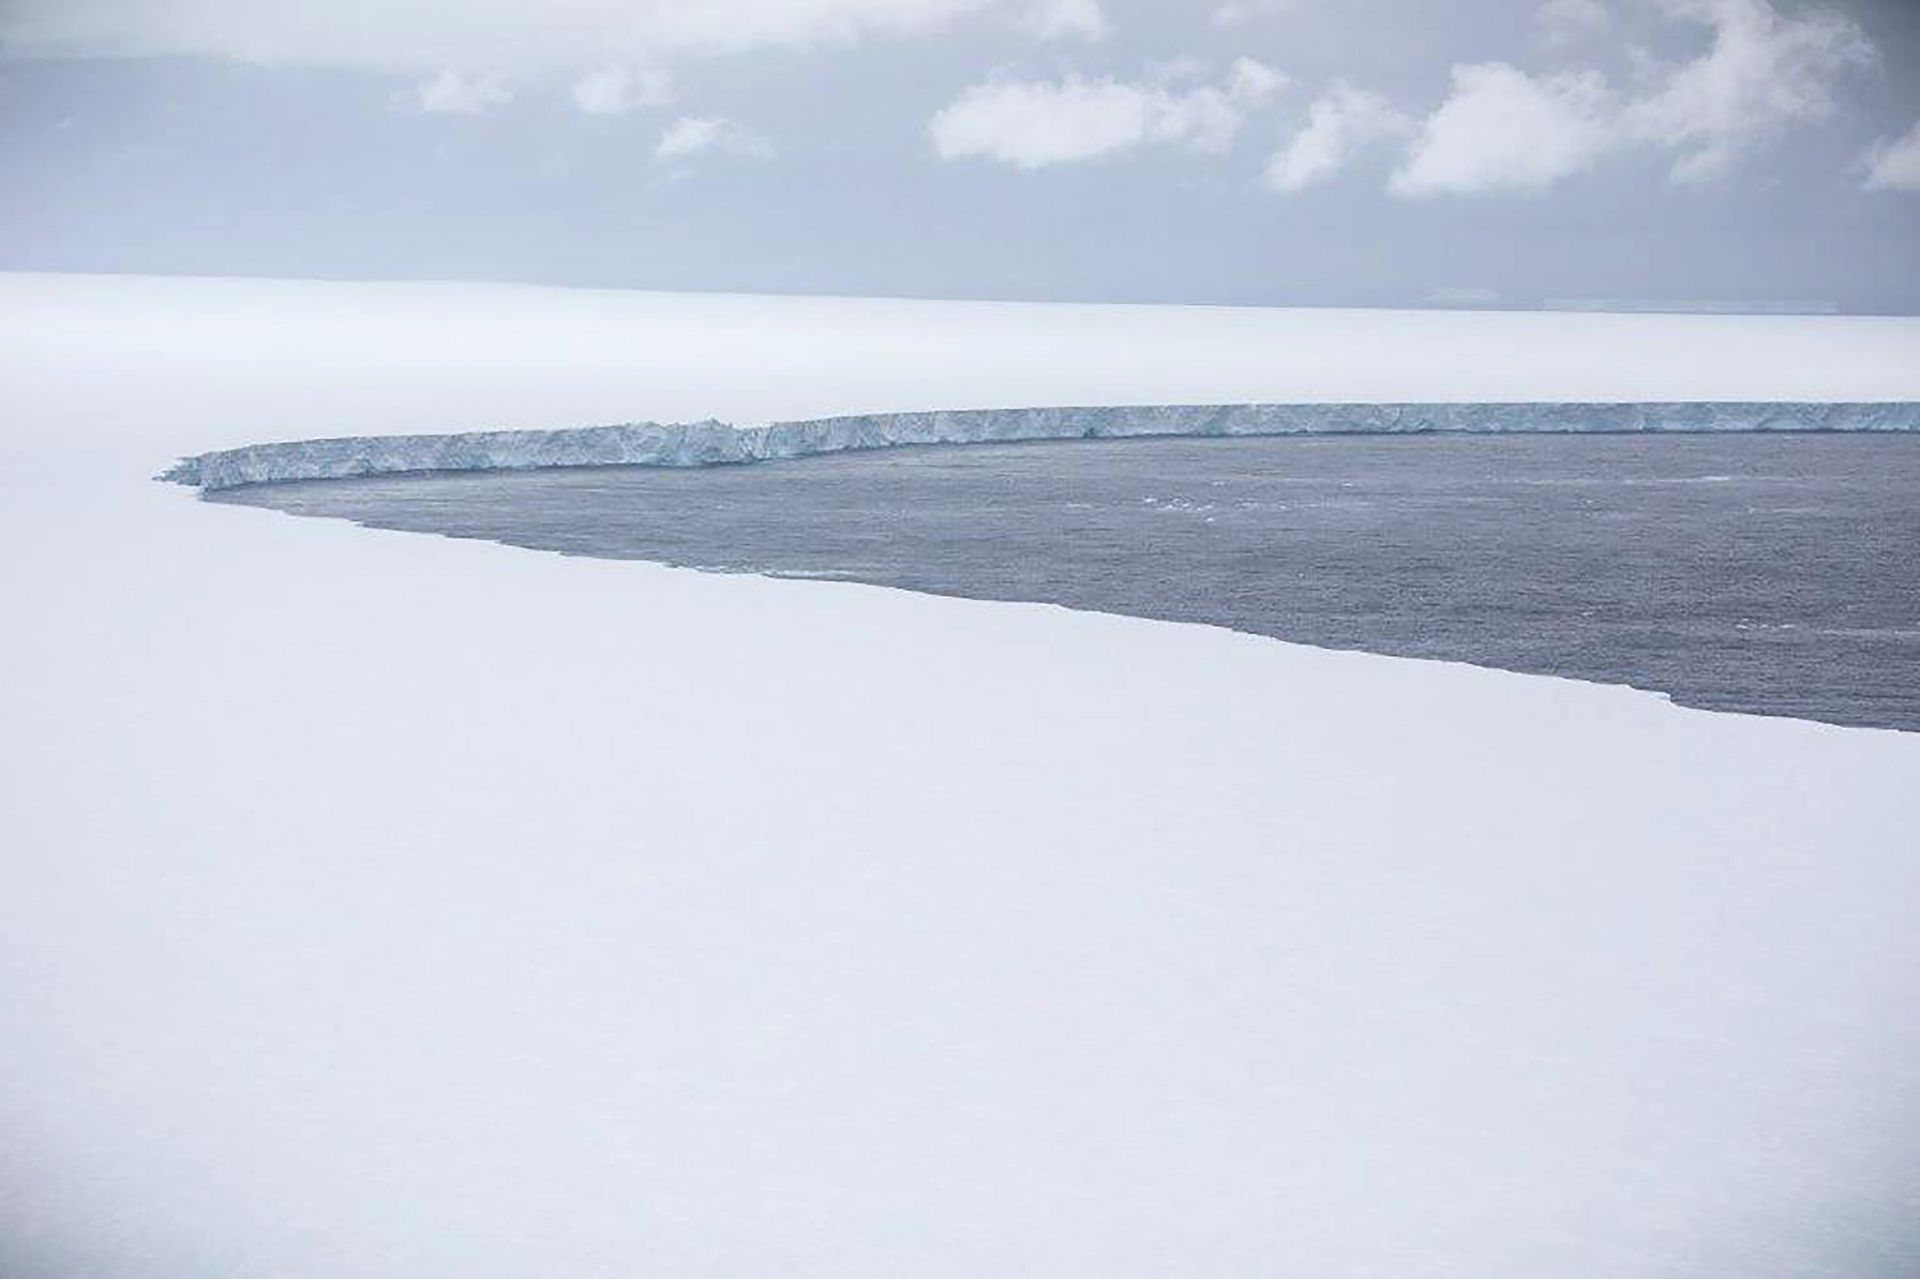 Най-големият айсберг в света се носи из Южния океан (сн. архив)